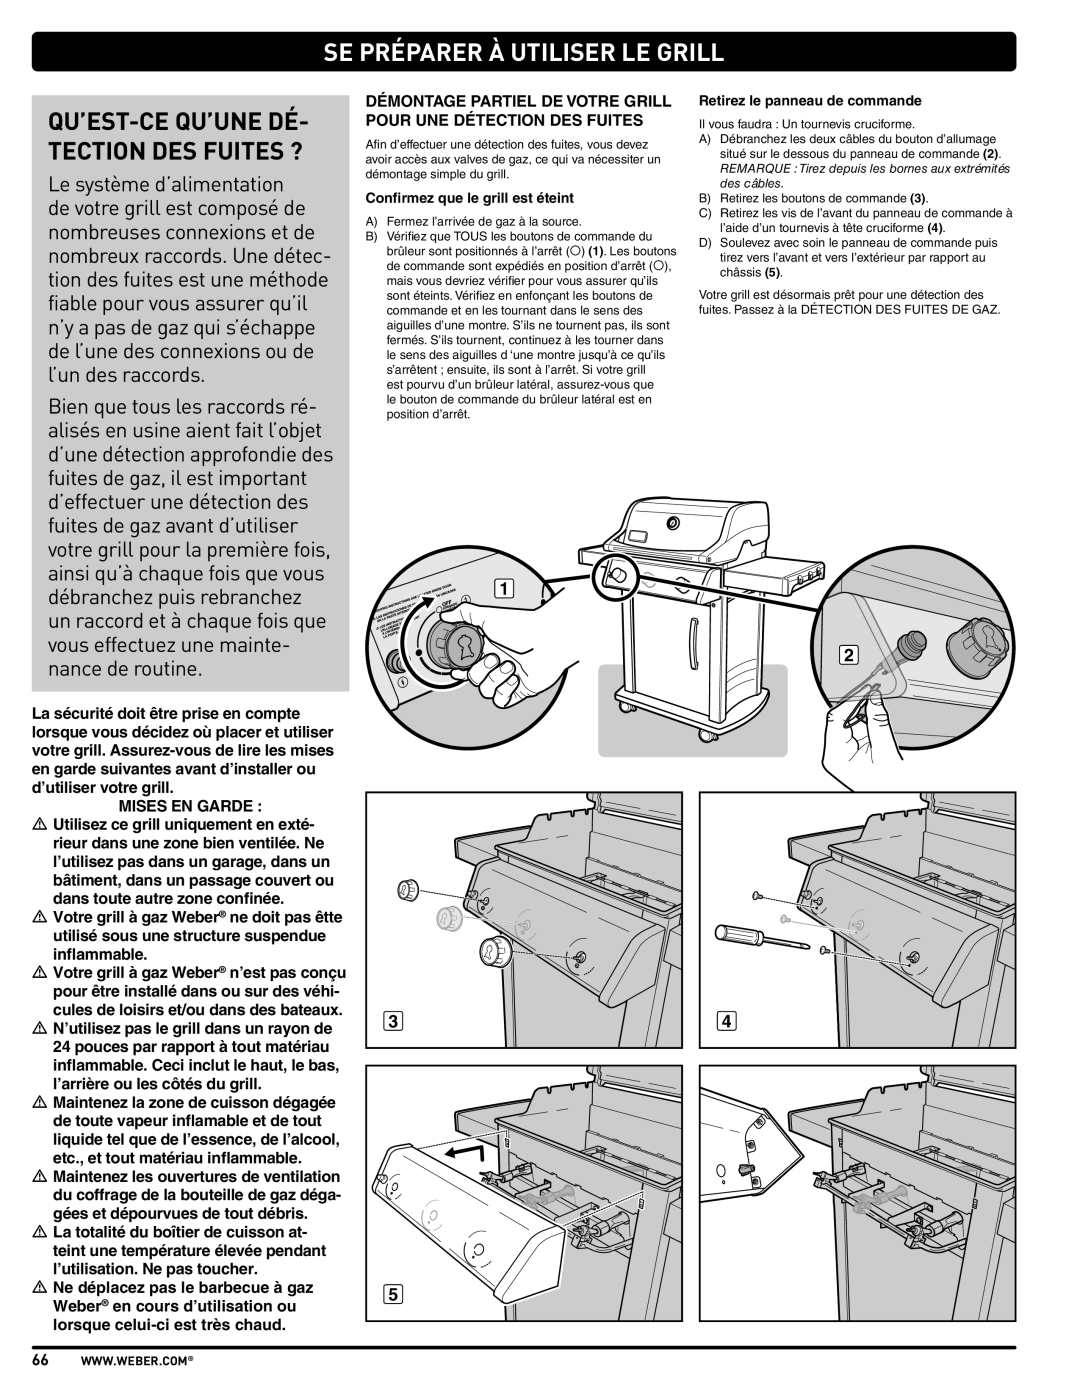 Weber PL - PG. 59 57205 manual Se Préparer À Utiliser Le Grill, Qu’Est-Ce Qu’Une Dé Tection Des Fuites ? 